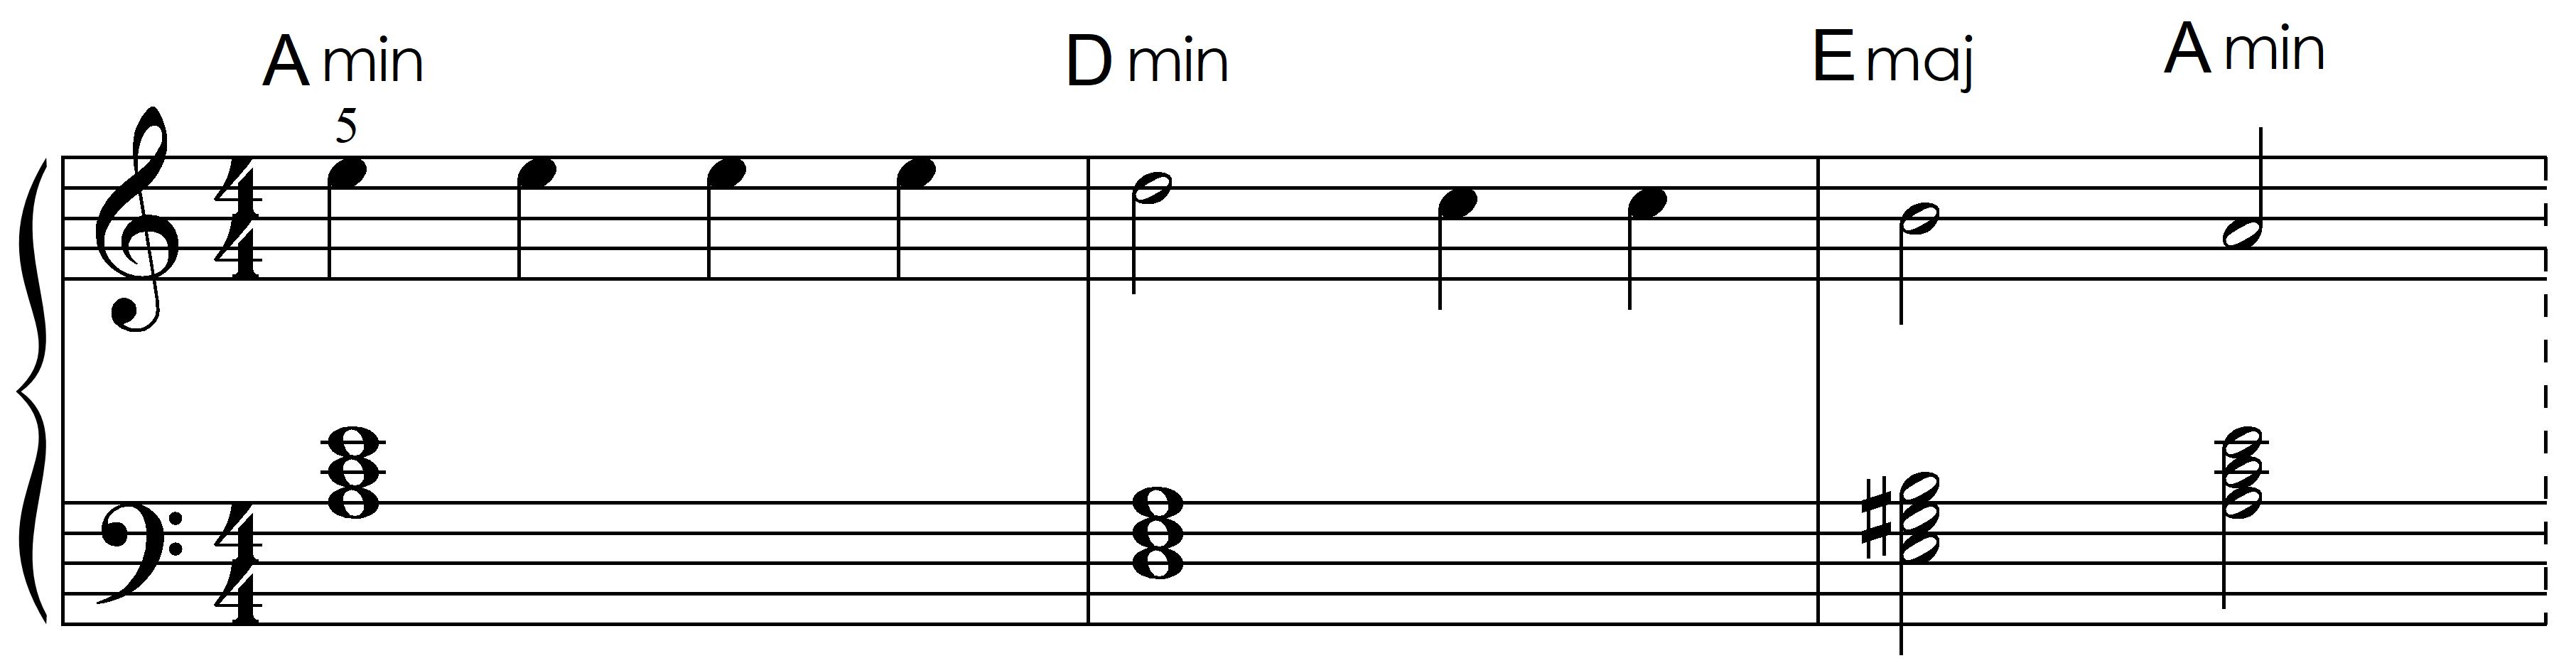 harmonized with triads